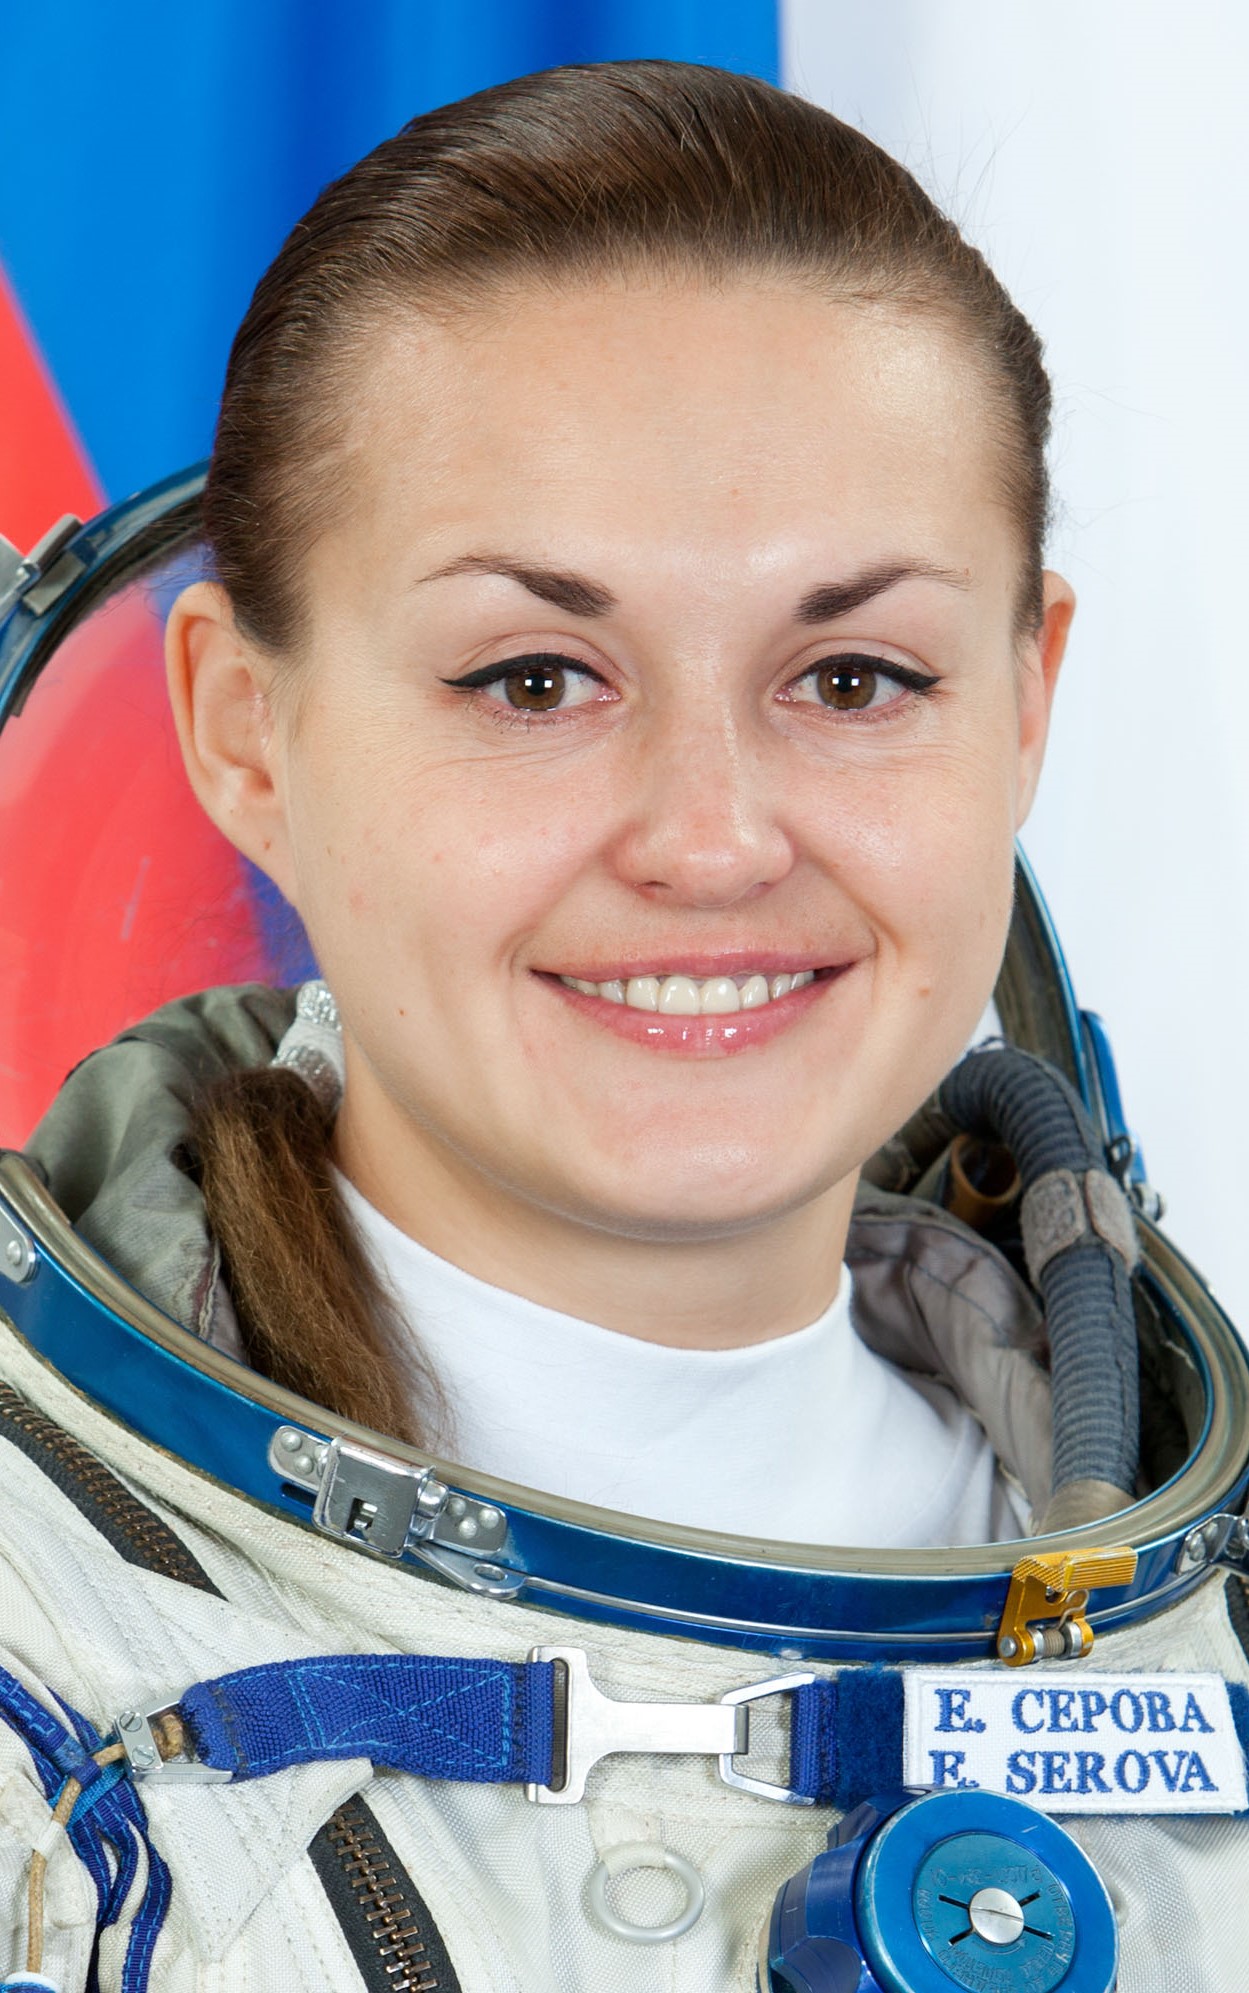 Elena Serova #22